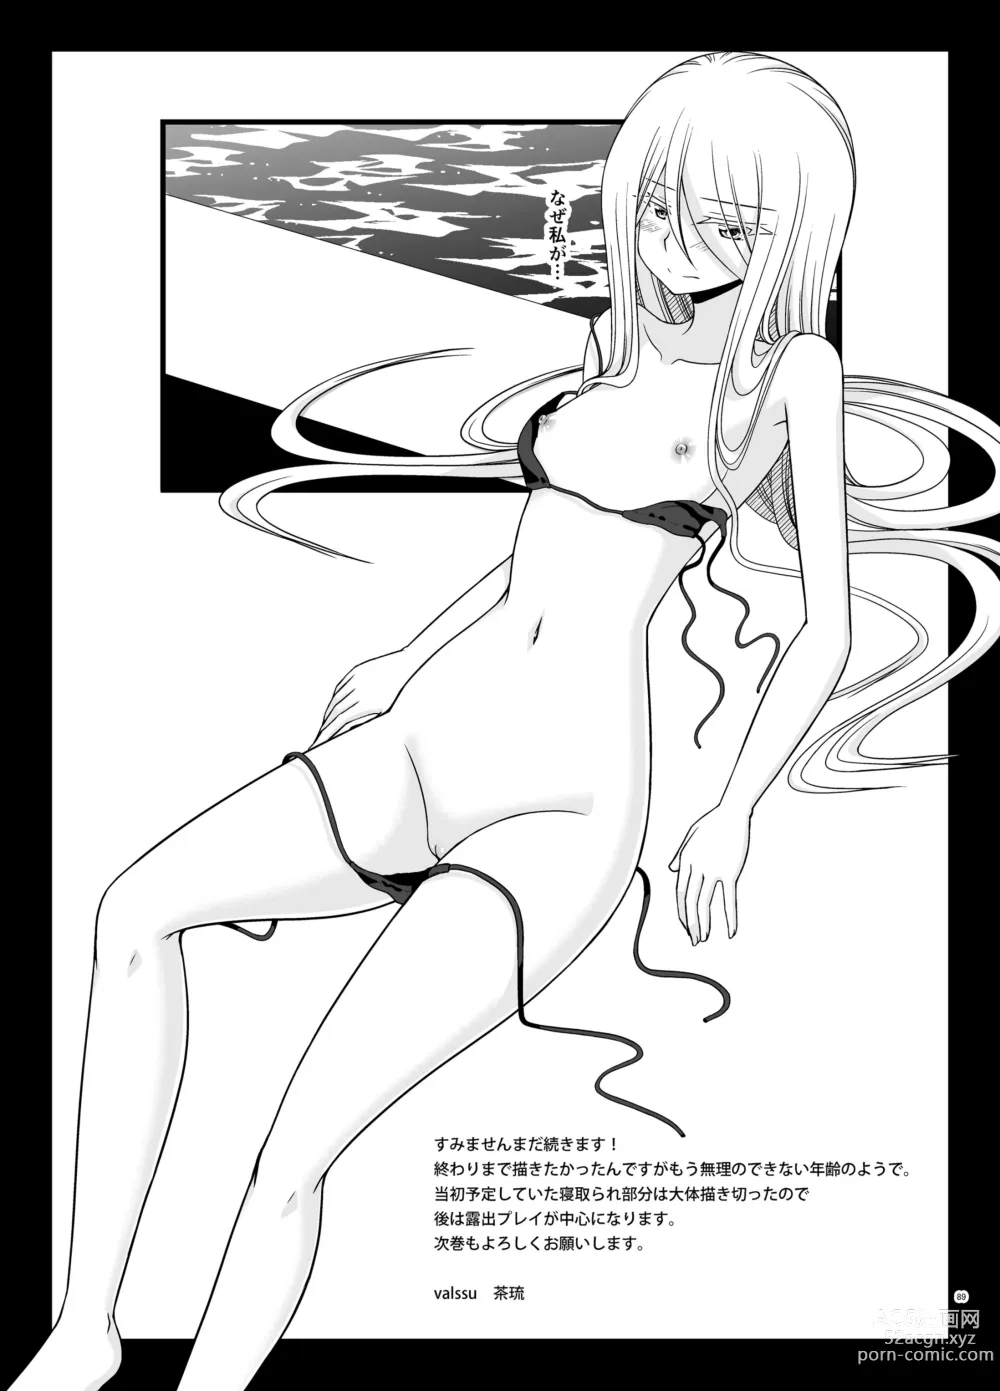 Page 176 of doujinshi Netorare Roshutsu Shoujo 2